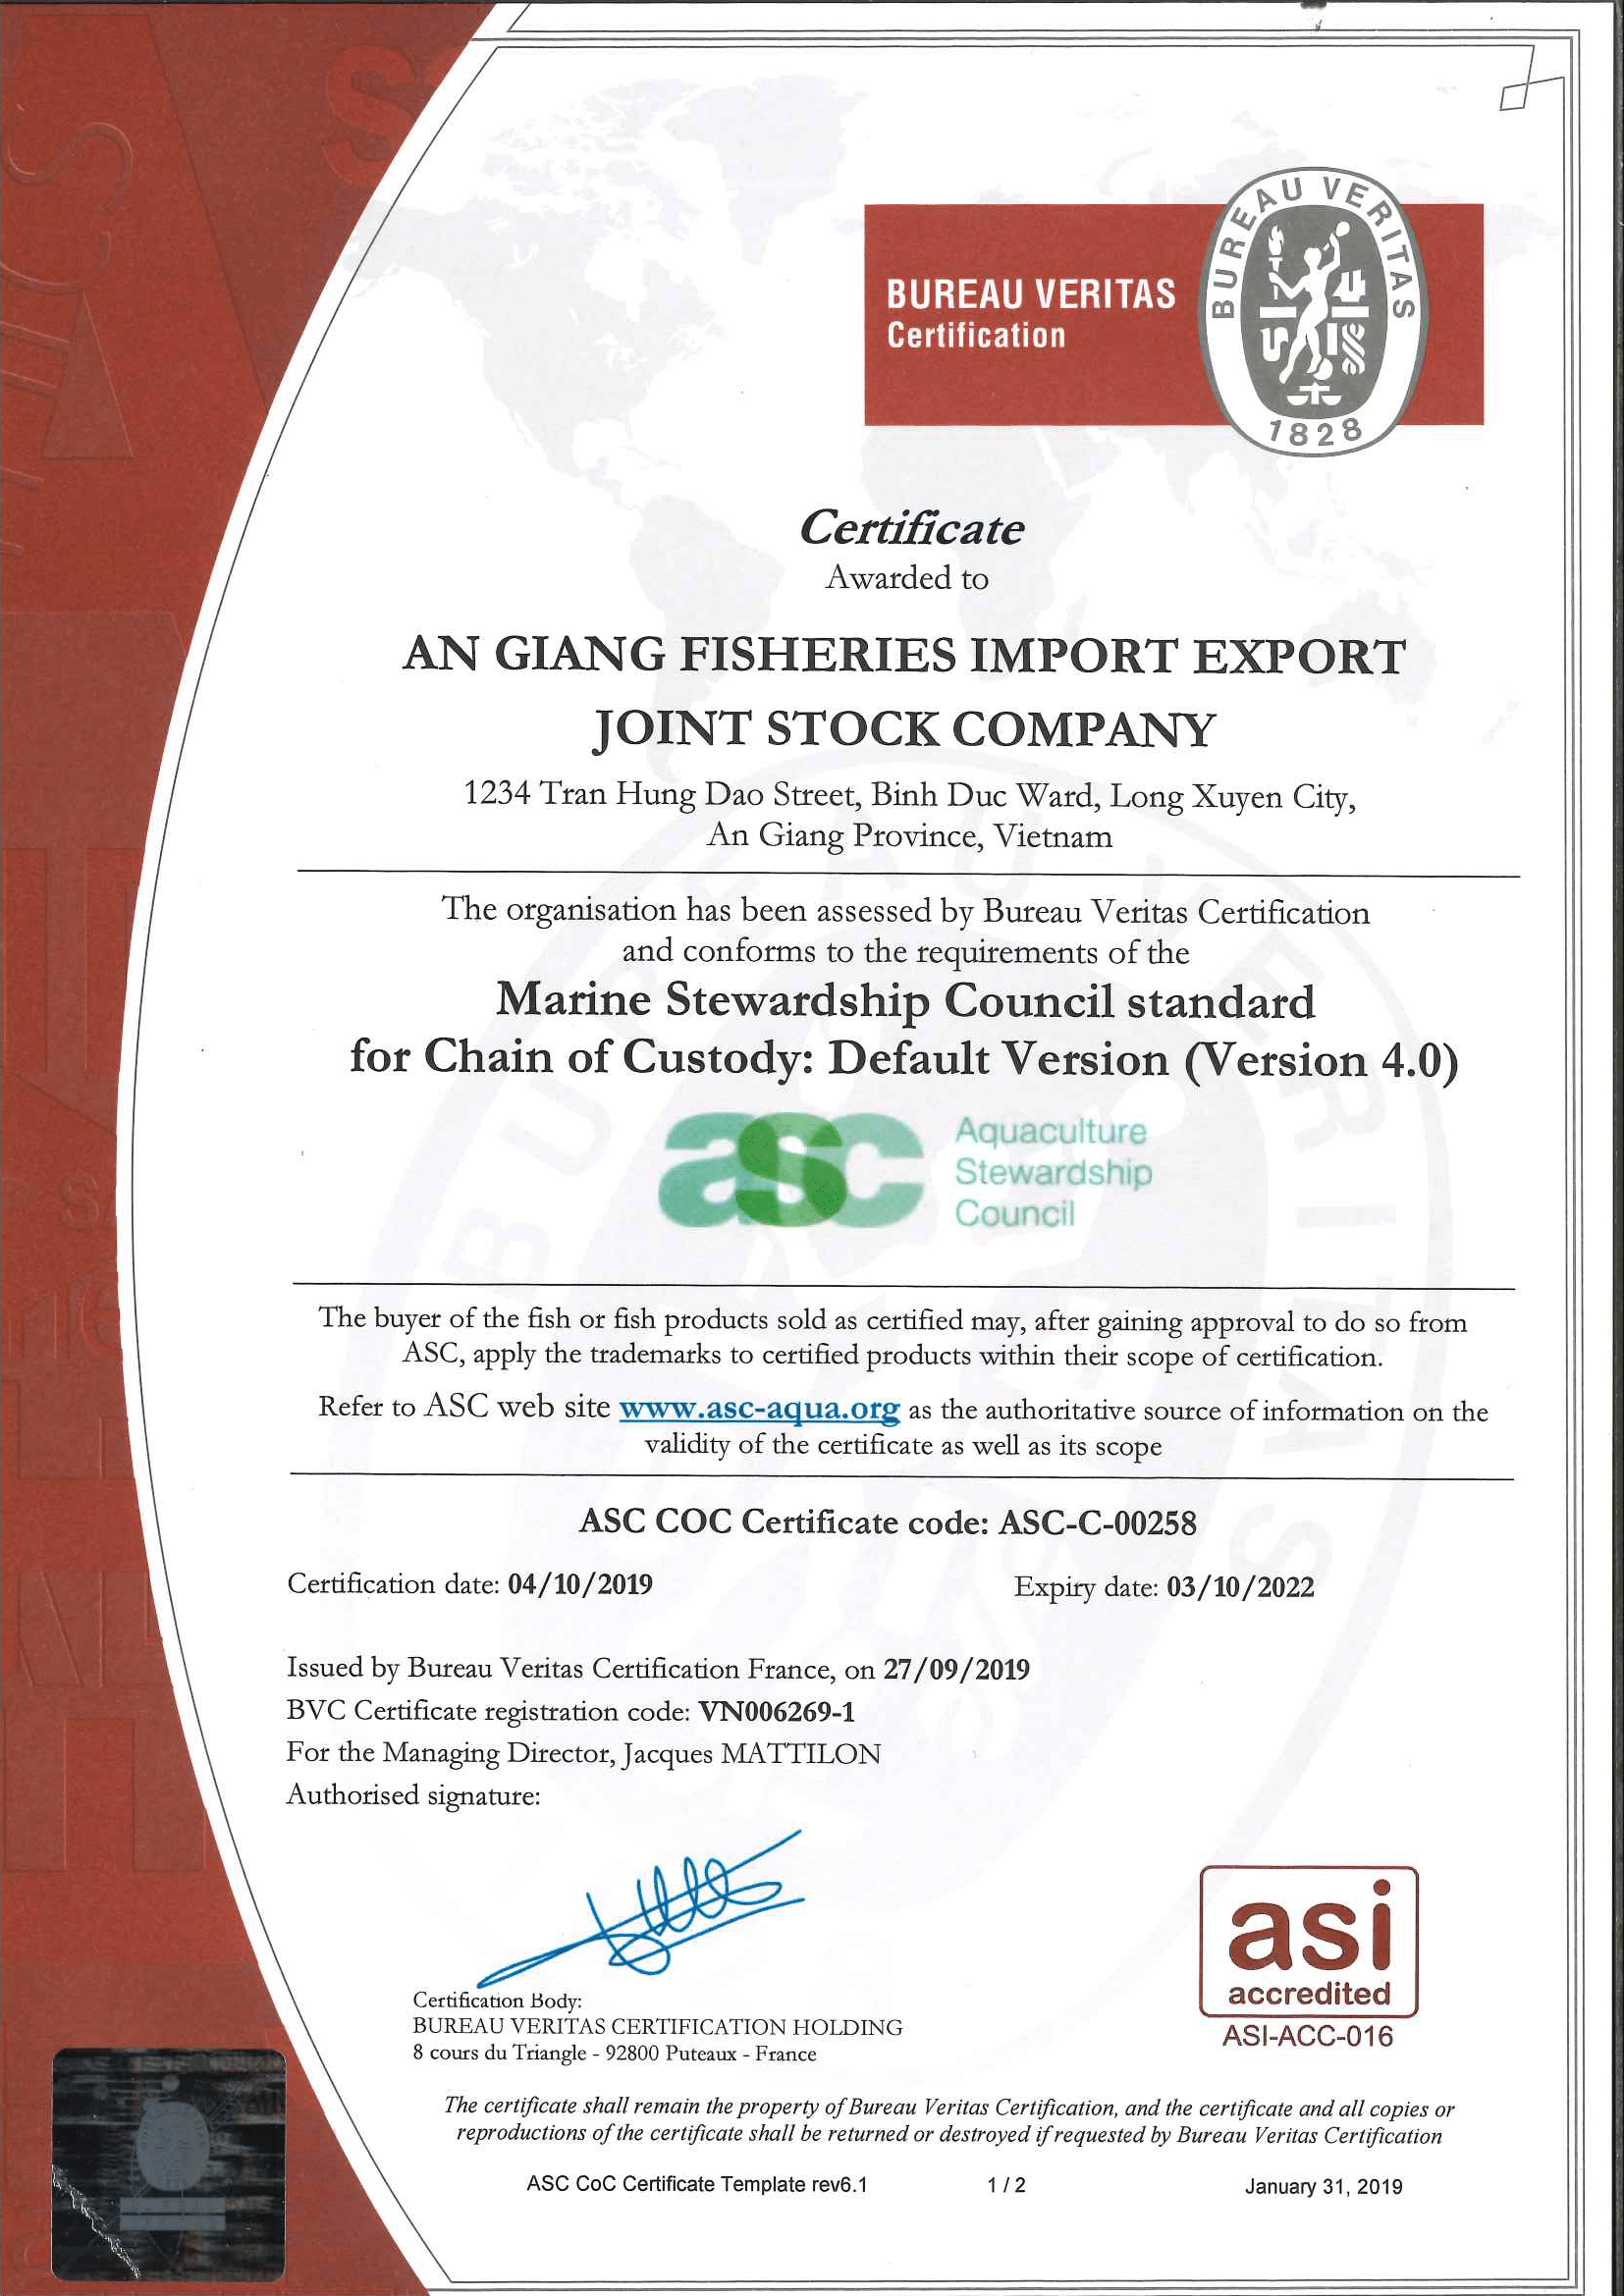 ASC COC Certificate code: ASC-C-00258